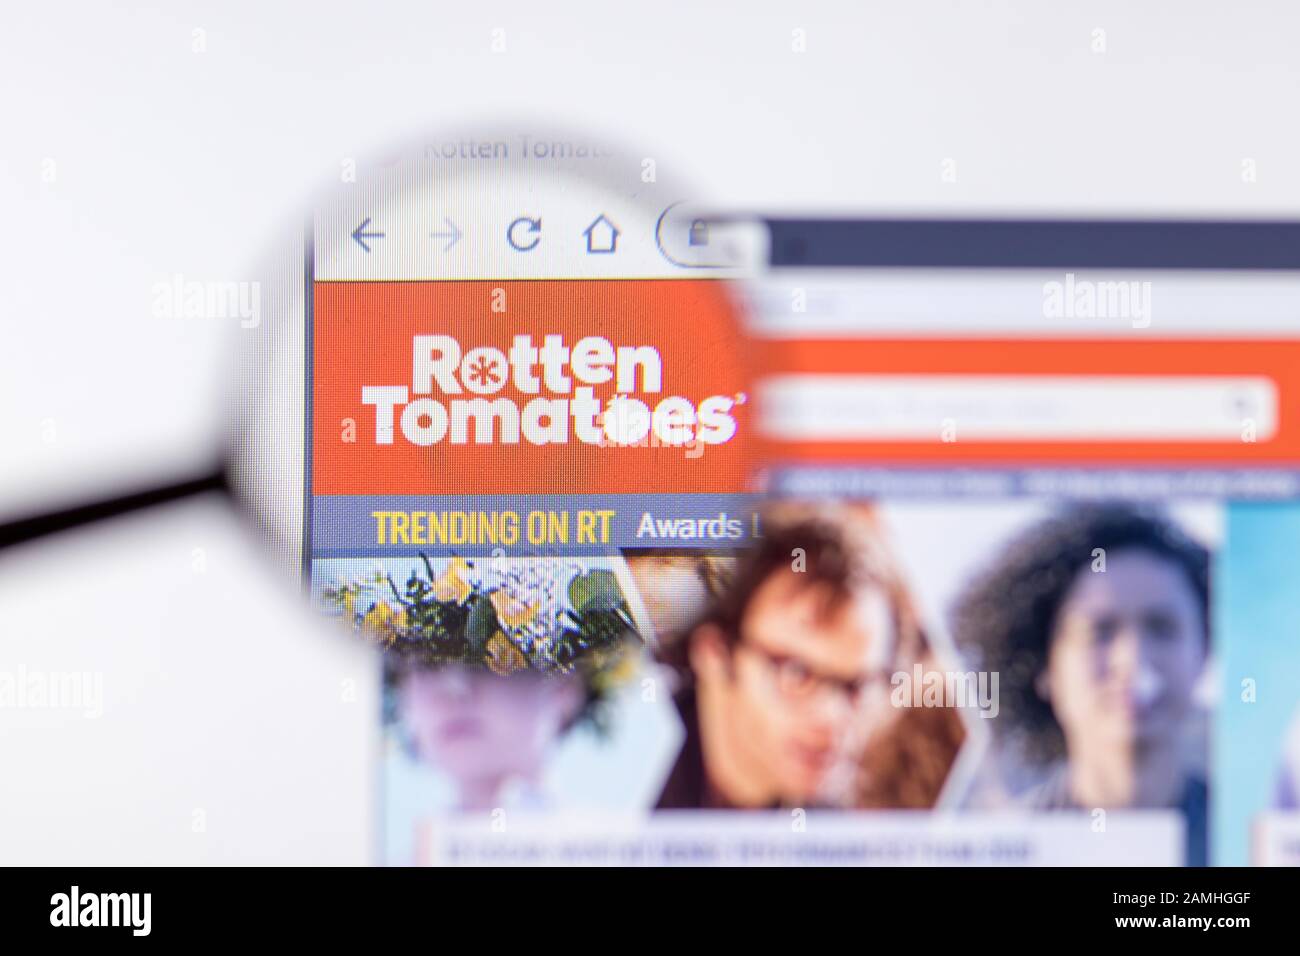 Saint-Pétersbourg, Russie - 10 janvier 2020: Rotten Tomates page du site sur l'affichage d'un ordinateur portable avec logo, éditorial illustratif Banque D'Images